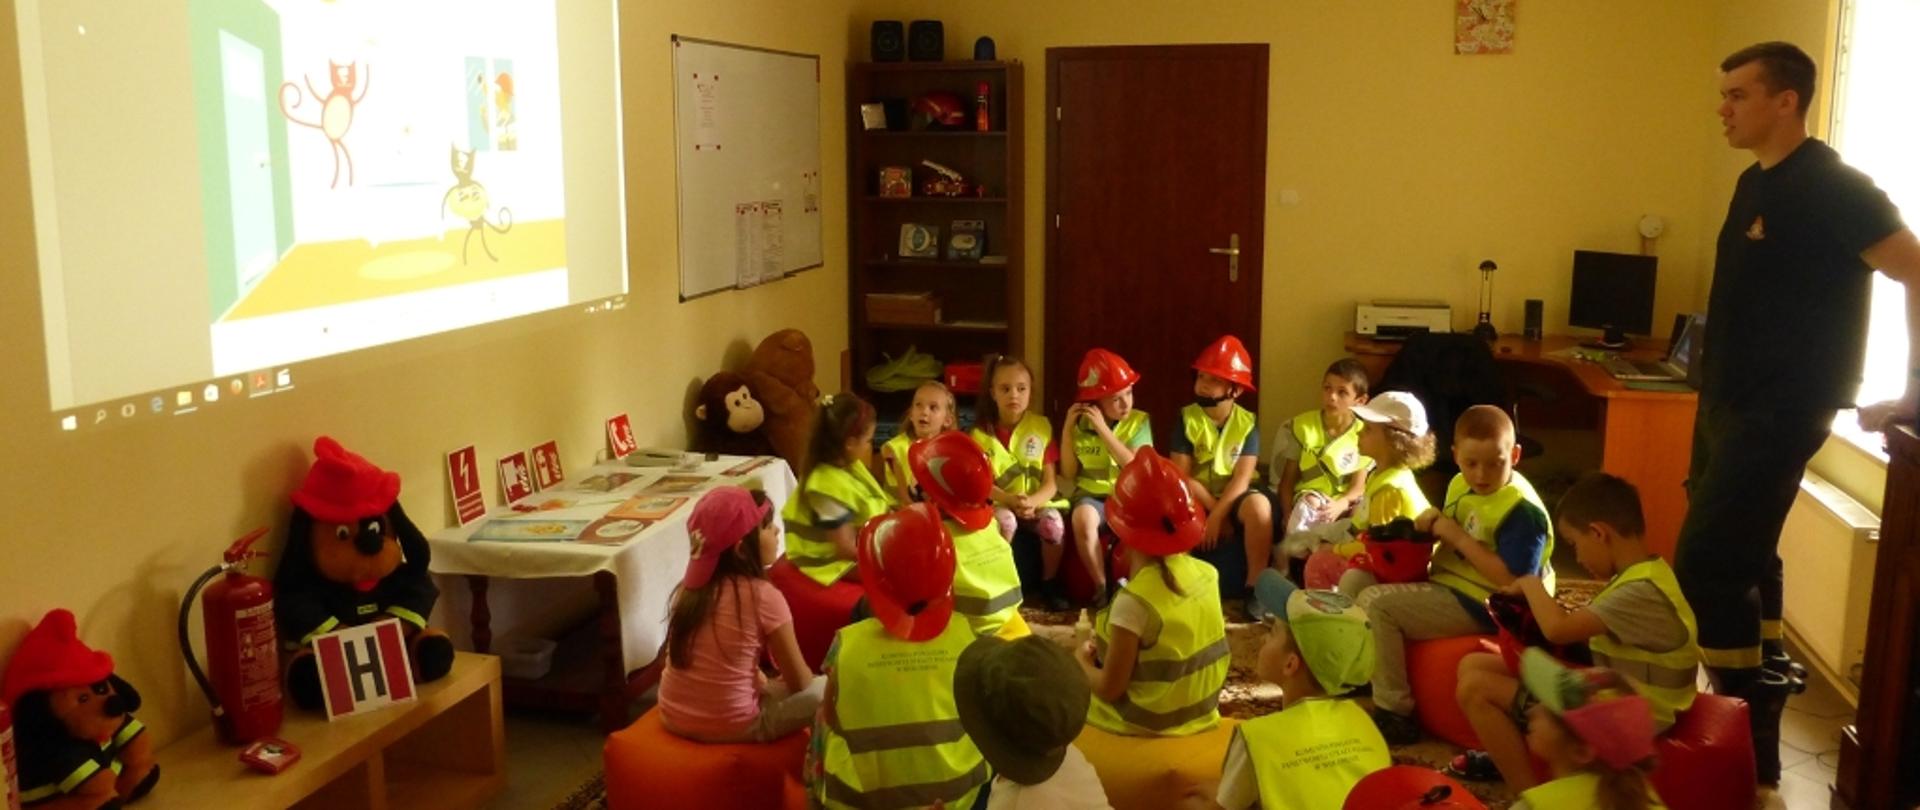 Na zdjęciu prowadzący zajęcia dla dzieci strażak z KP PSP Wołomin oraz grupa dzieci podczas oglądania prezentacji na ścianie sali. Dzieci ubrane w kamizelki odblaskowe i hełmy strażackie siedzą na pufach. 